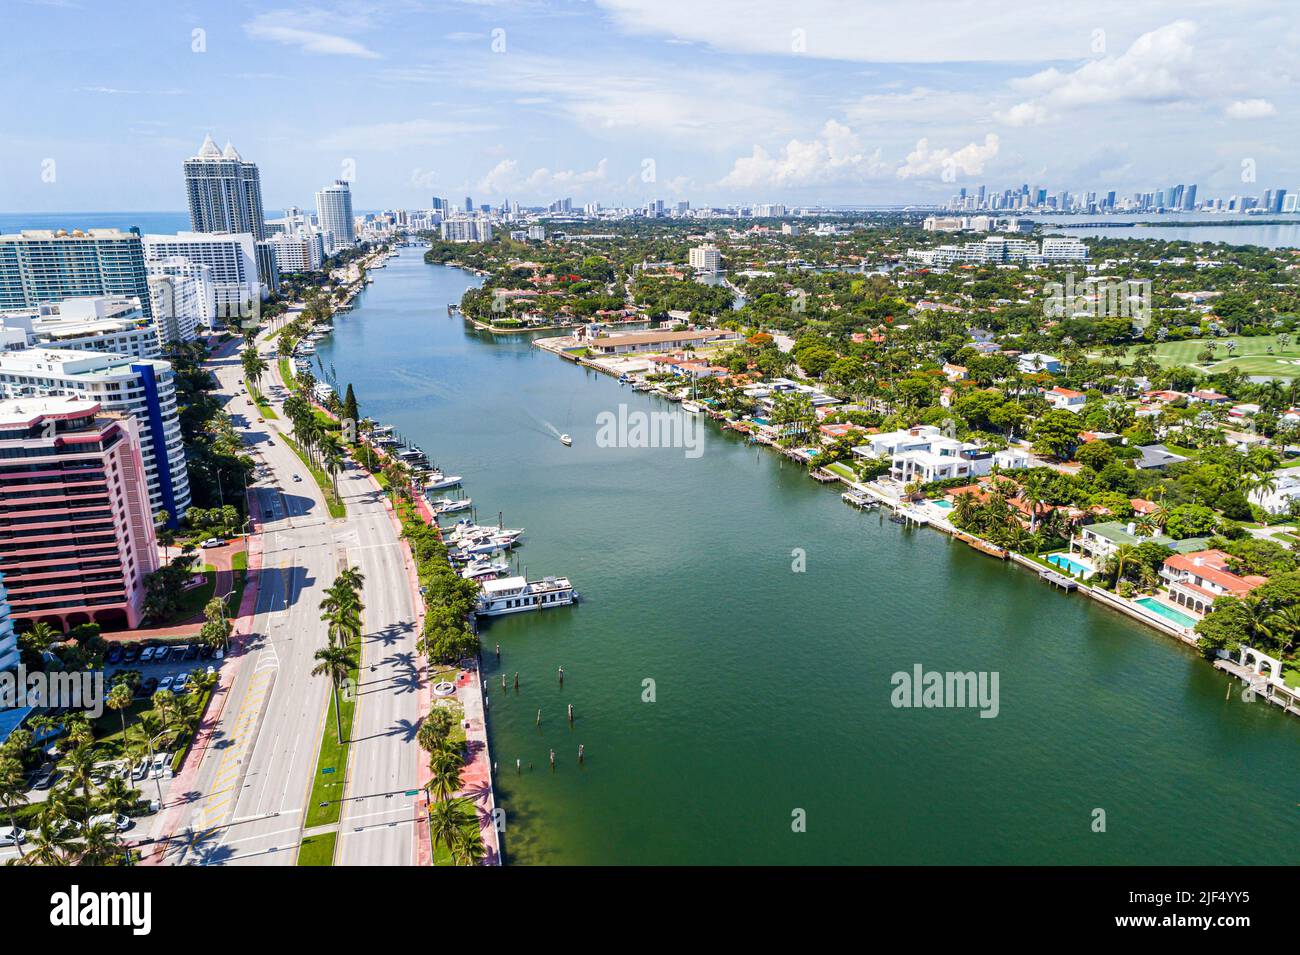 Miami Beach Florida, vista aerea dall'alto, Collins Avenue Indian Creek la Gorce Island Waterfront Mansions tenute case Residences, ci Foto Stock